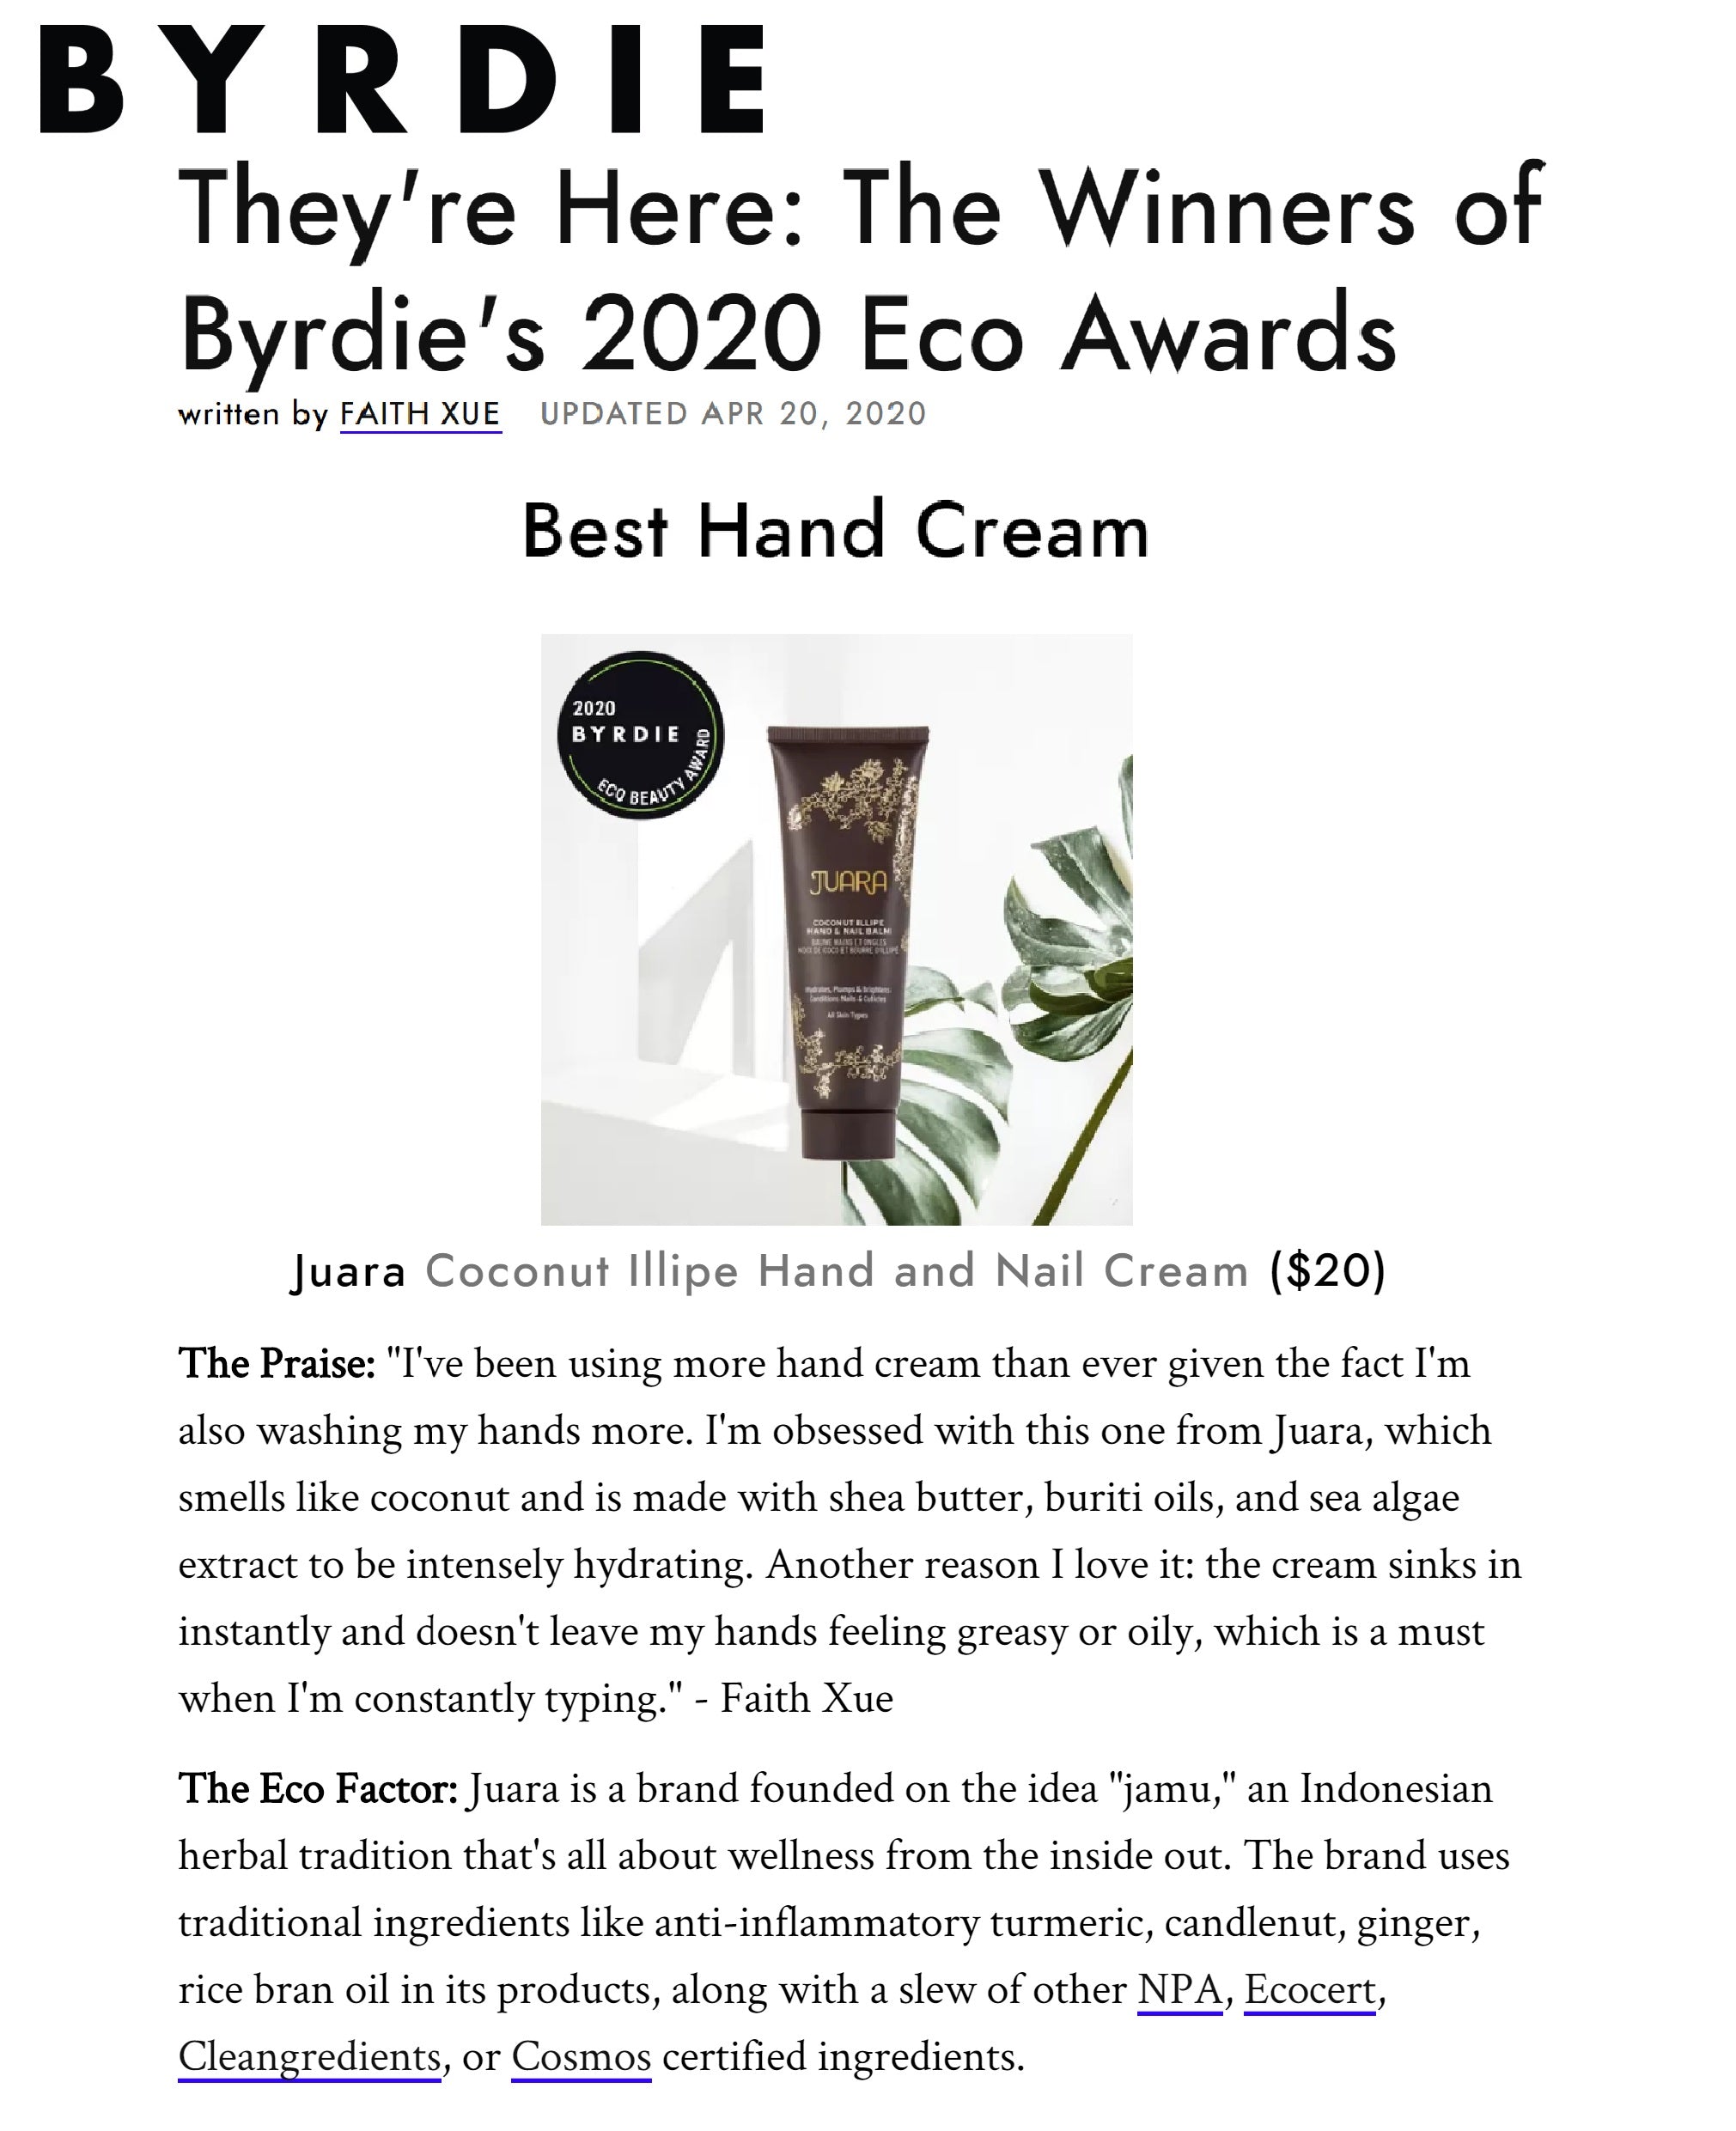 BYRDIE: They're Here: The Winners of Byrdie's 2020 Eco Awards JUARA Skincare